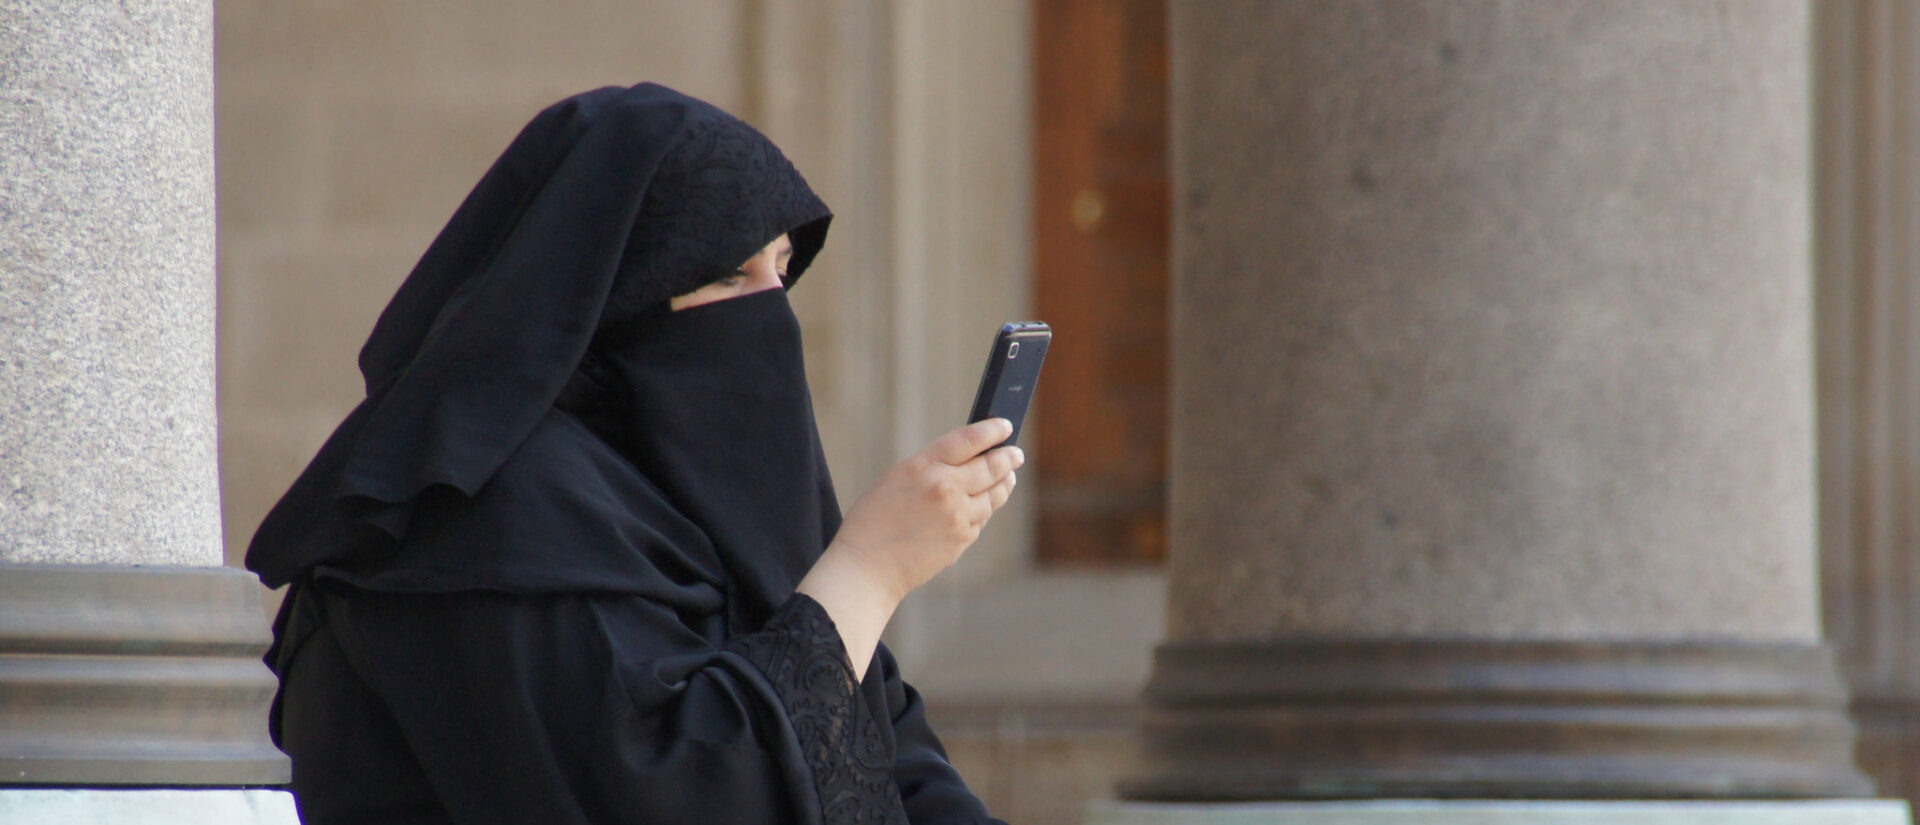 Le port de la burqa doit-il être interdit en Suisse? |© Patrick Denker/Flickr/CC BY 2.0